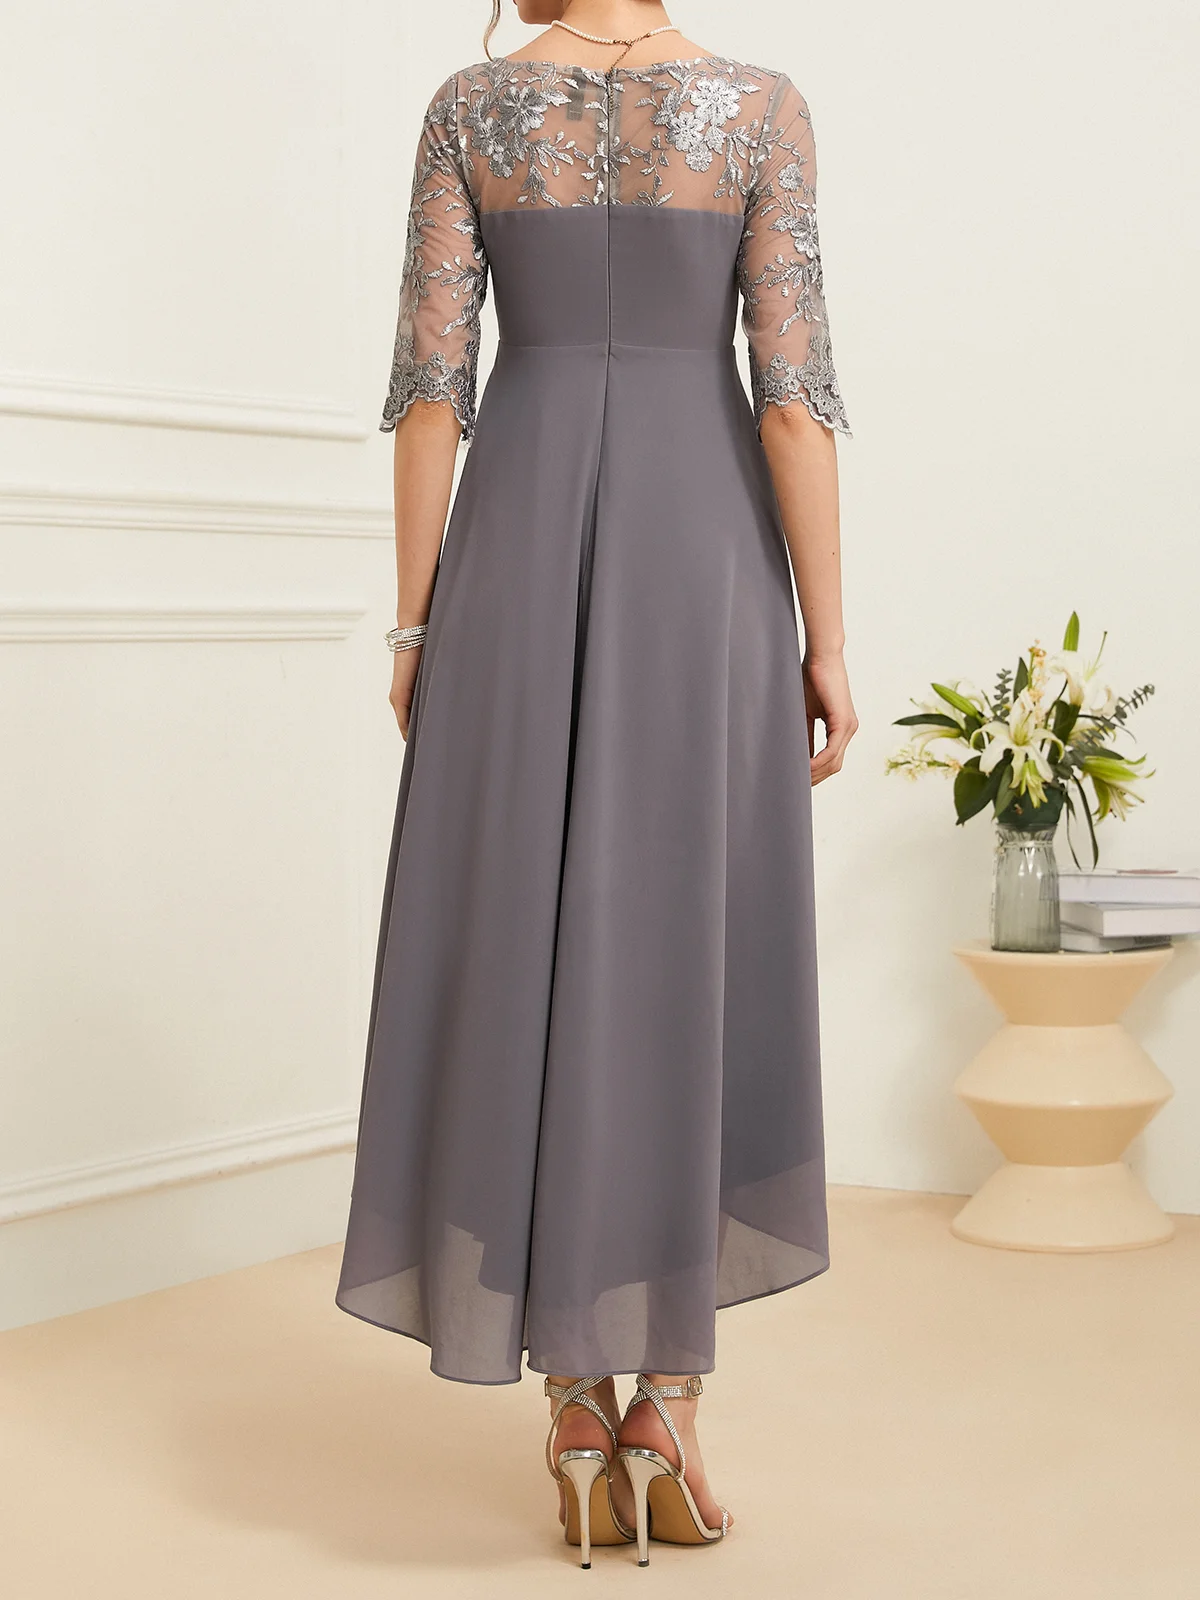 Damen Abendkleid Spitze Elegant Maxikleid Rundhals X-Linie Party Hochzeit Abschlussball Kleid